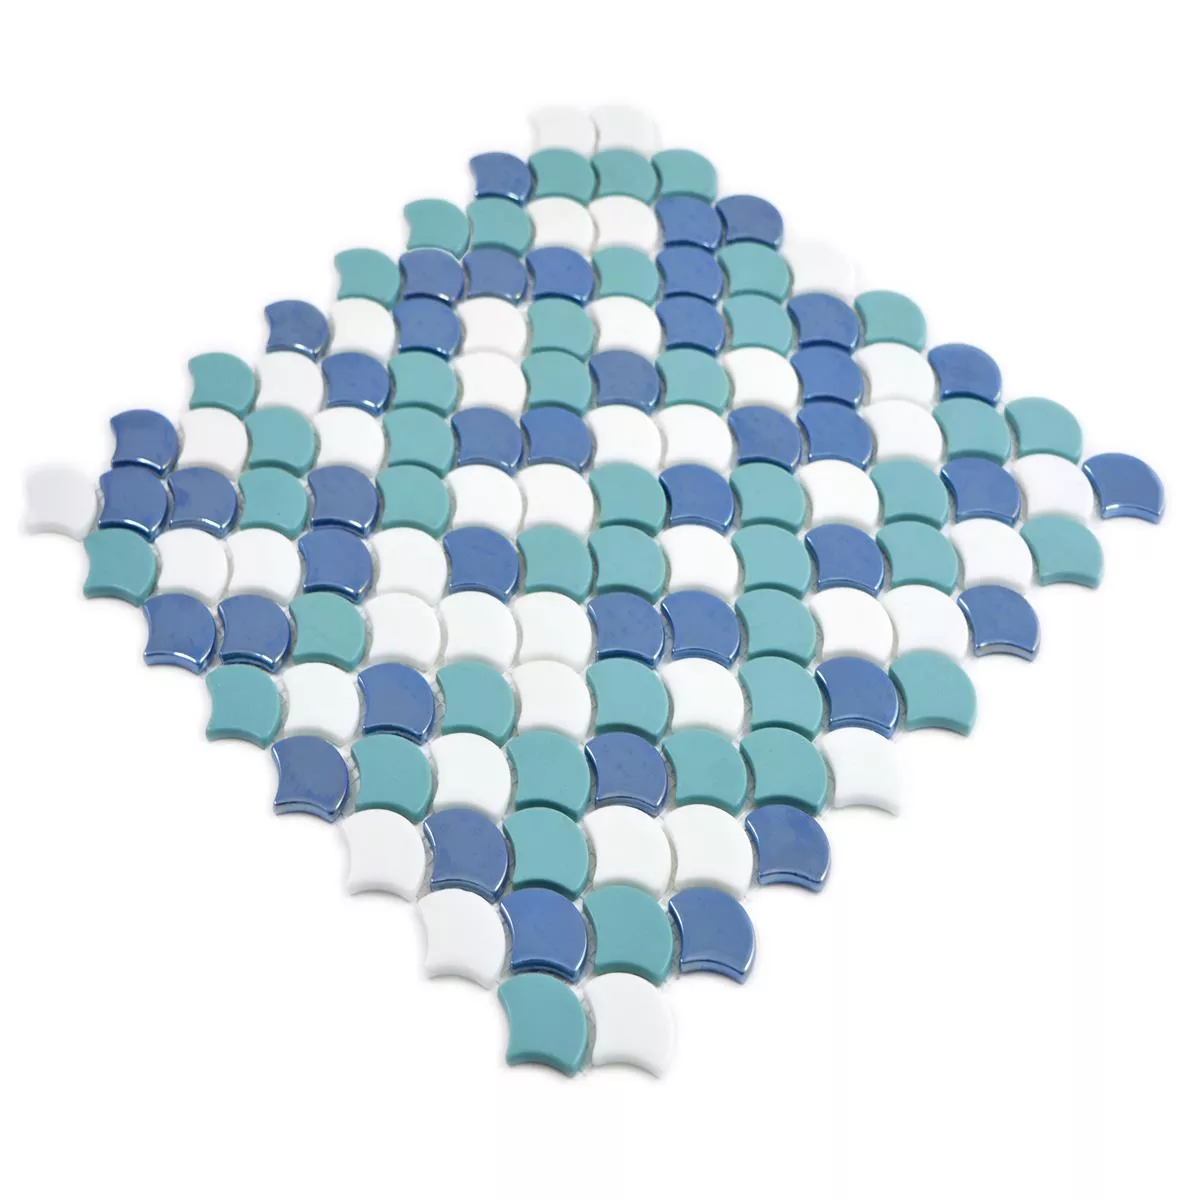 Glass Mosaic Tiles Laurenz Color Mix